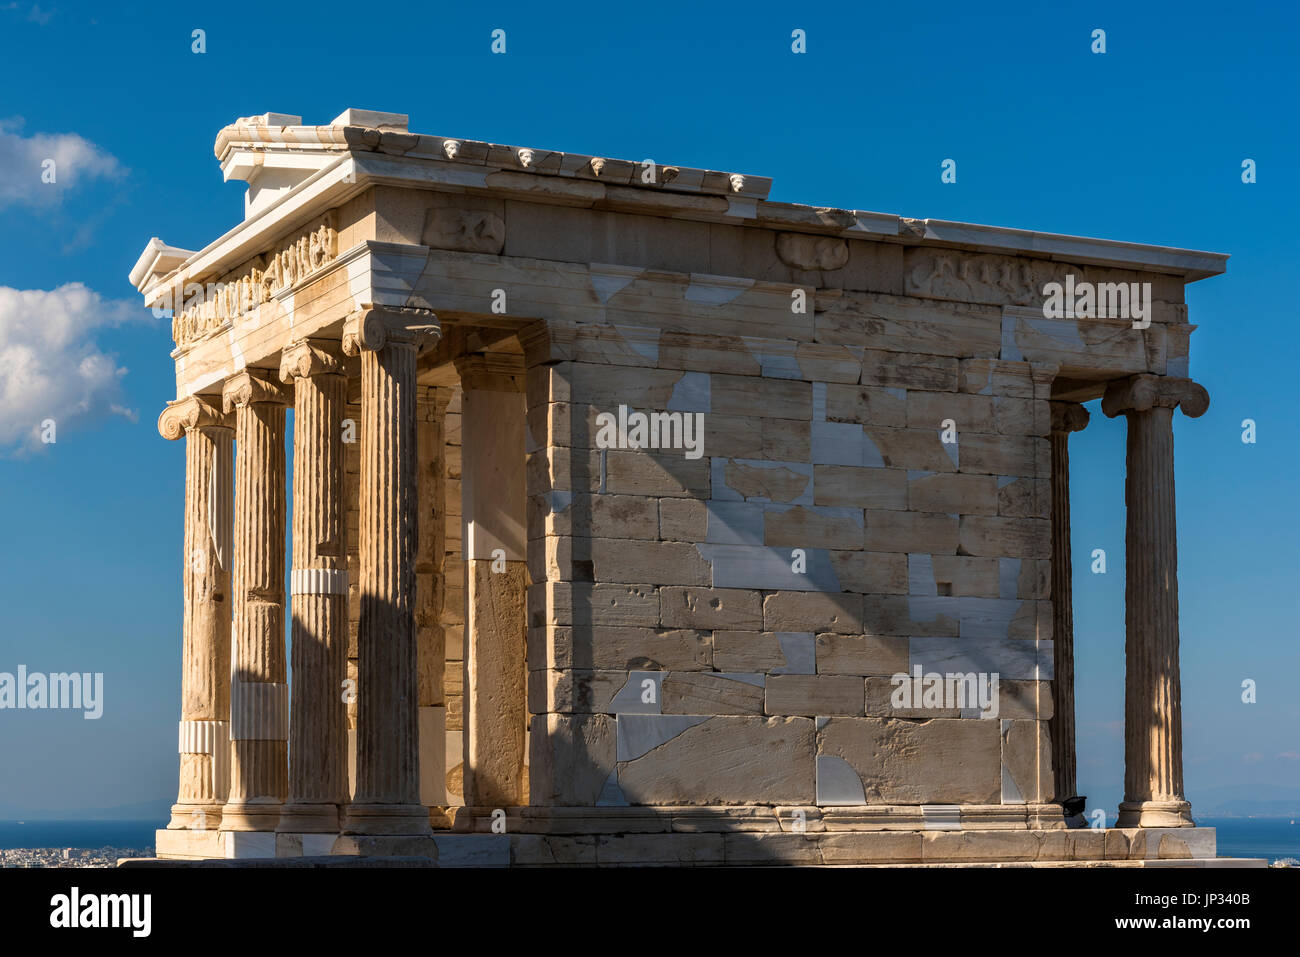 Temple of Athena Nike, Acropolis, Athens, Attica, Greece Stock Photo